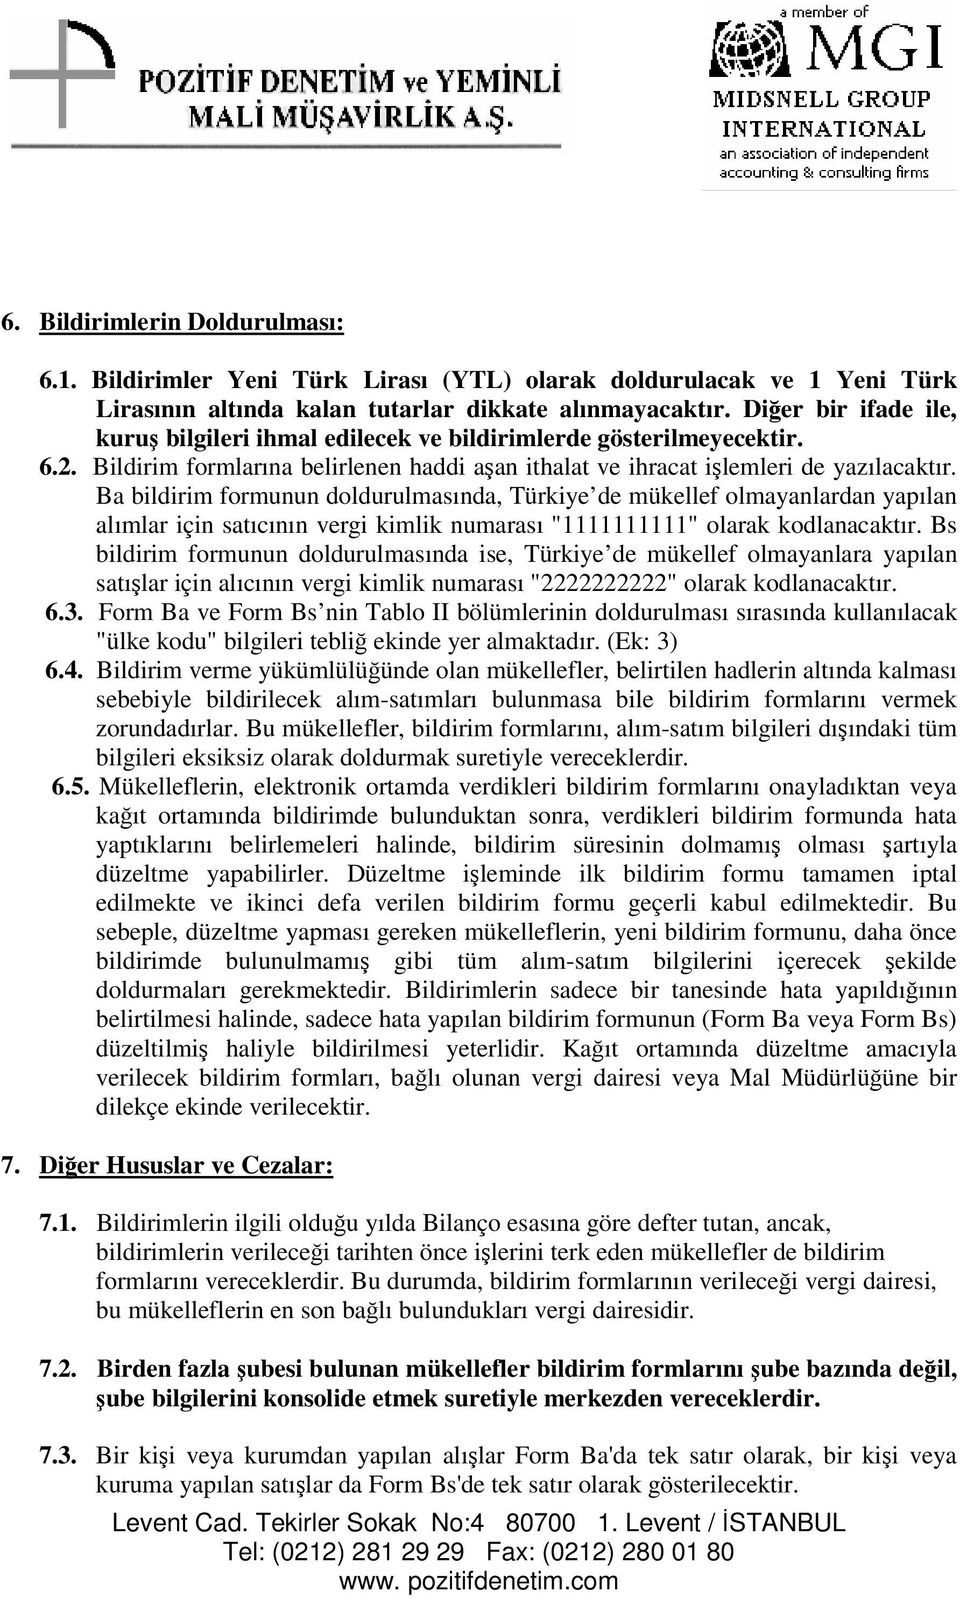 Ba bildirim formunun doldurulmasında, Türkiye de mükellef olmayanlardan yapılan alımlar için satıcının vergi kimlik numarası "1111111111" olarak kodlanacaktır.